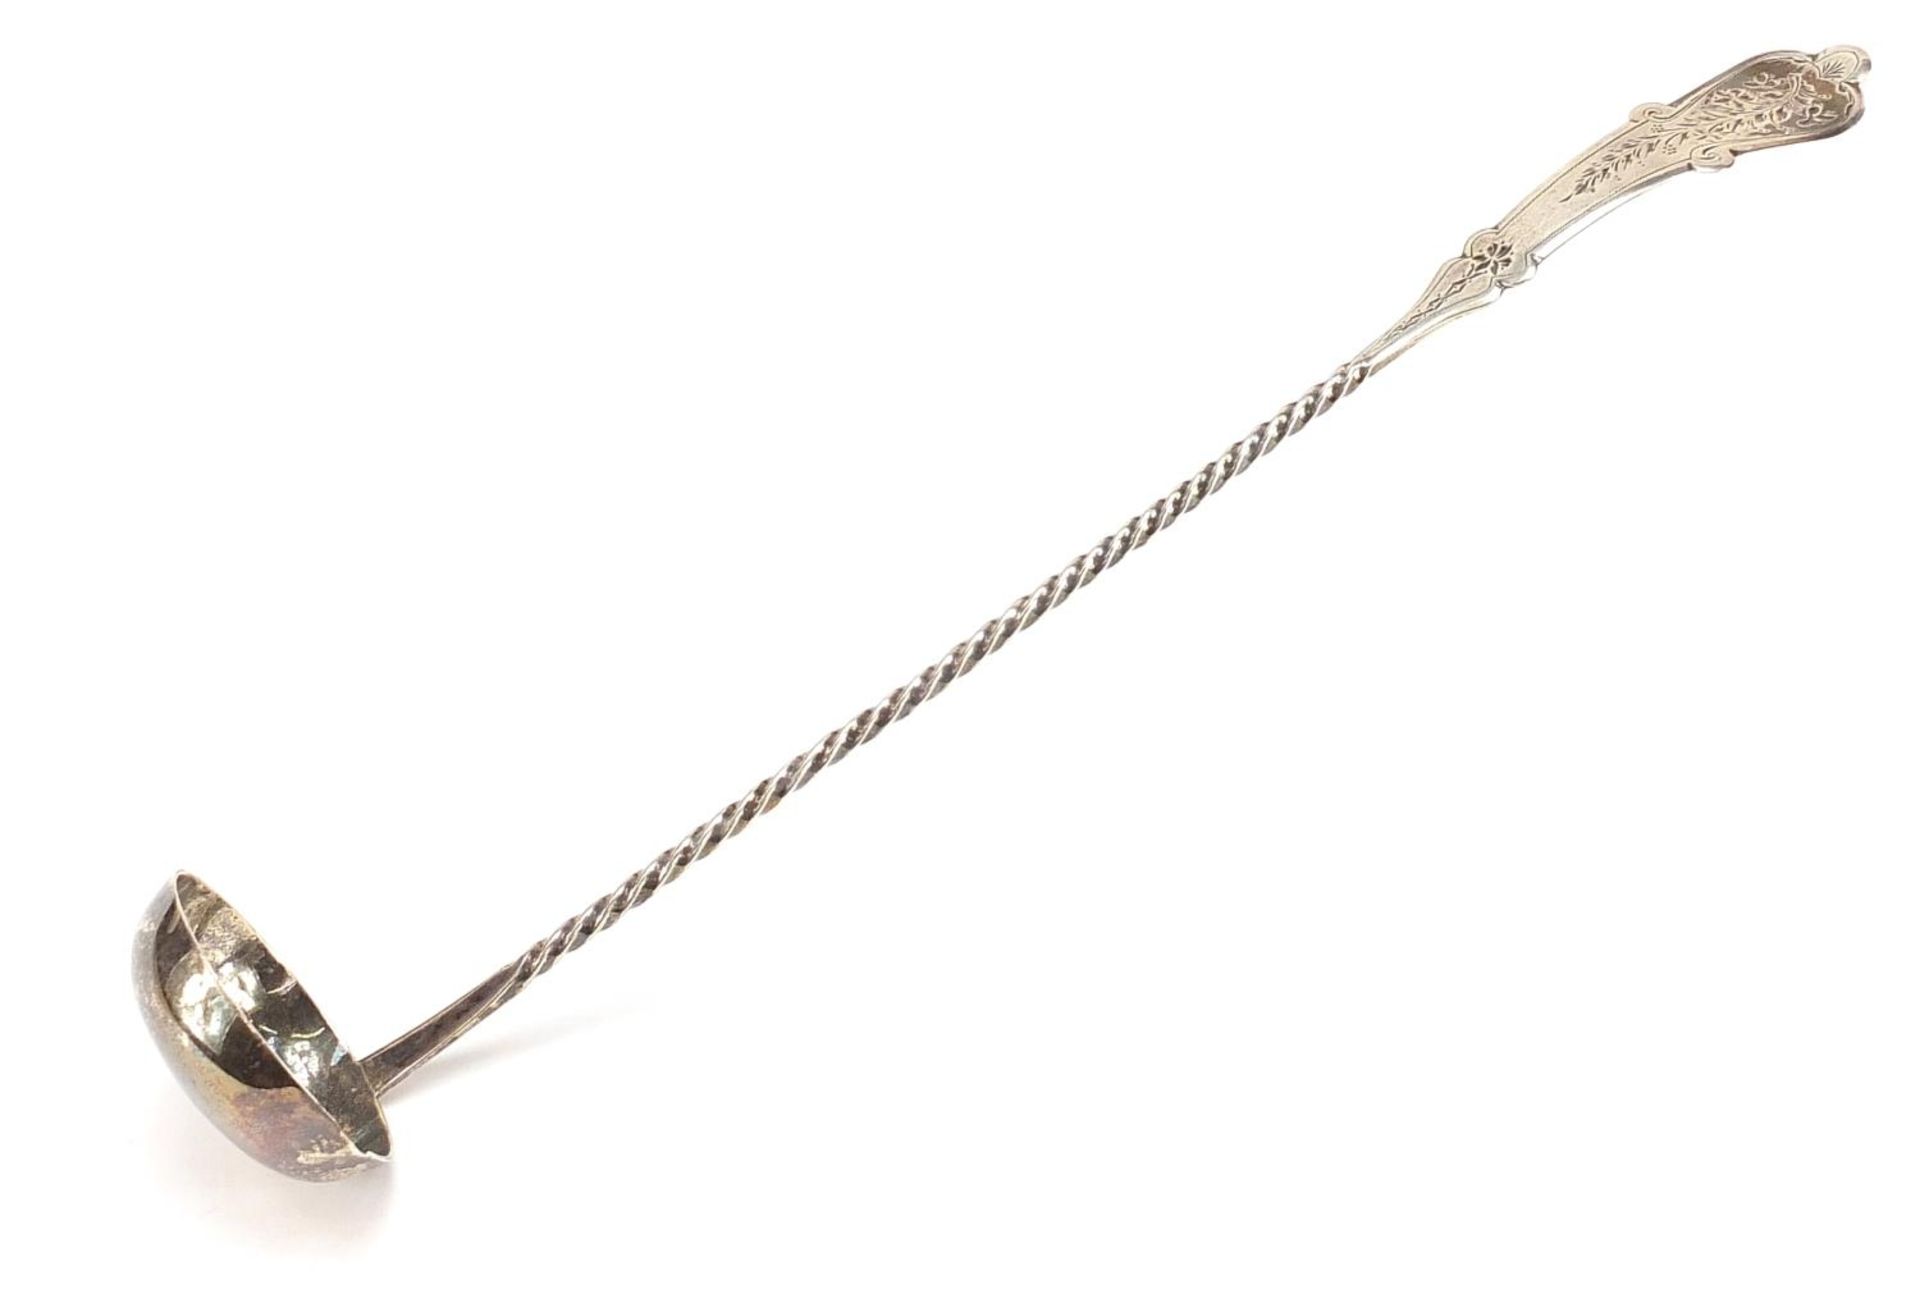 Antique Dutch silver ladle, 30cm in length, 57.8g